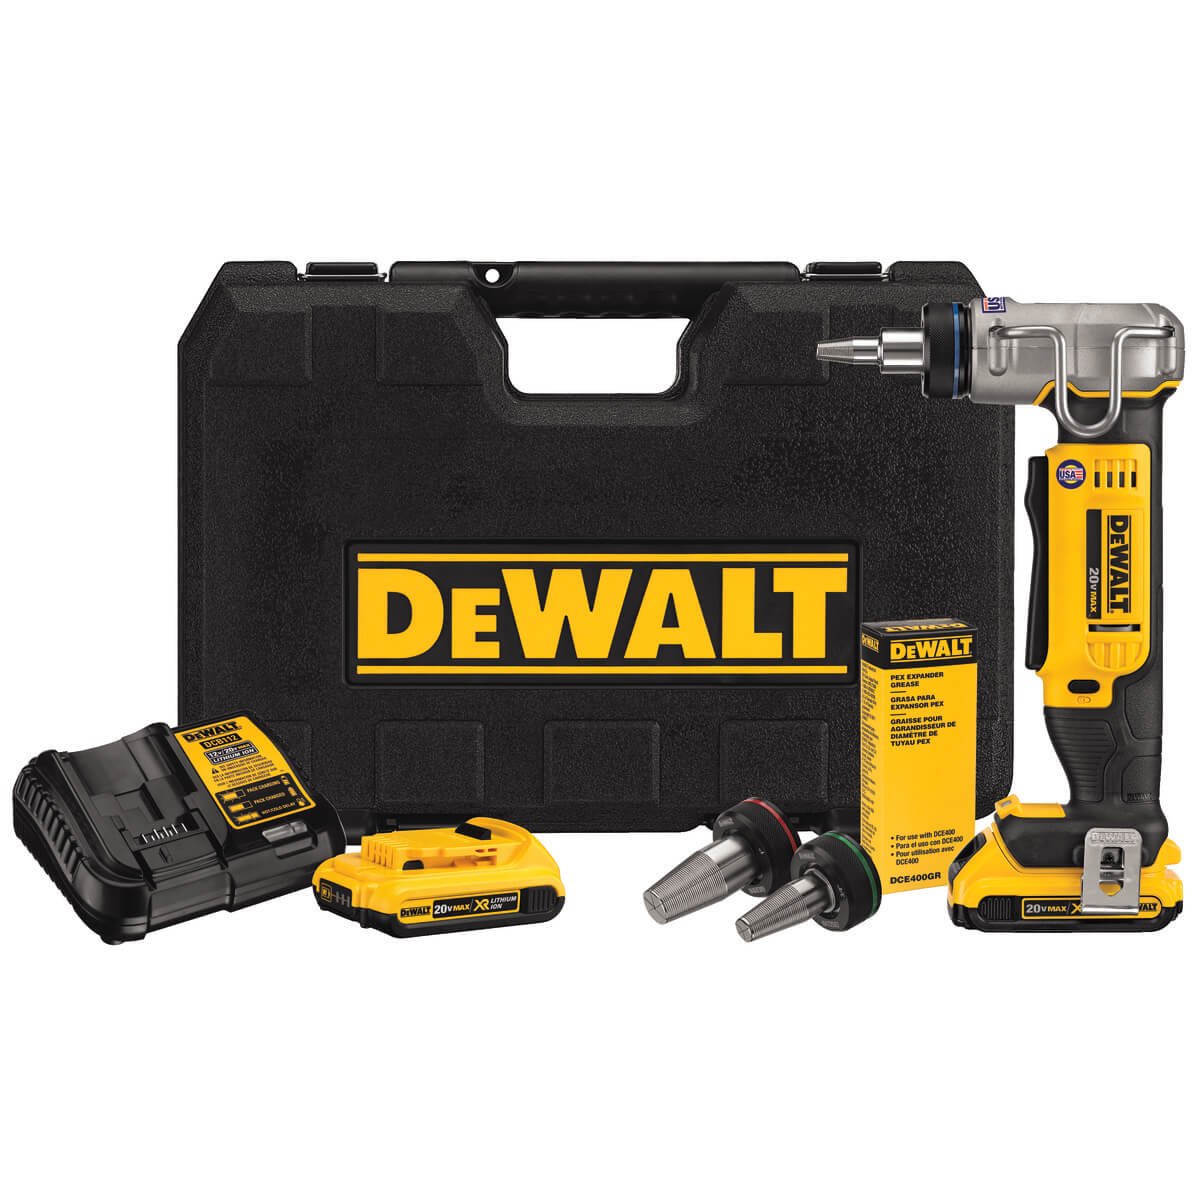 DEWALT DCE400D2 20V Max 1" PEX Expander Tool Kit